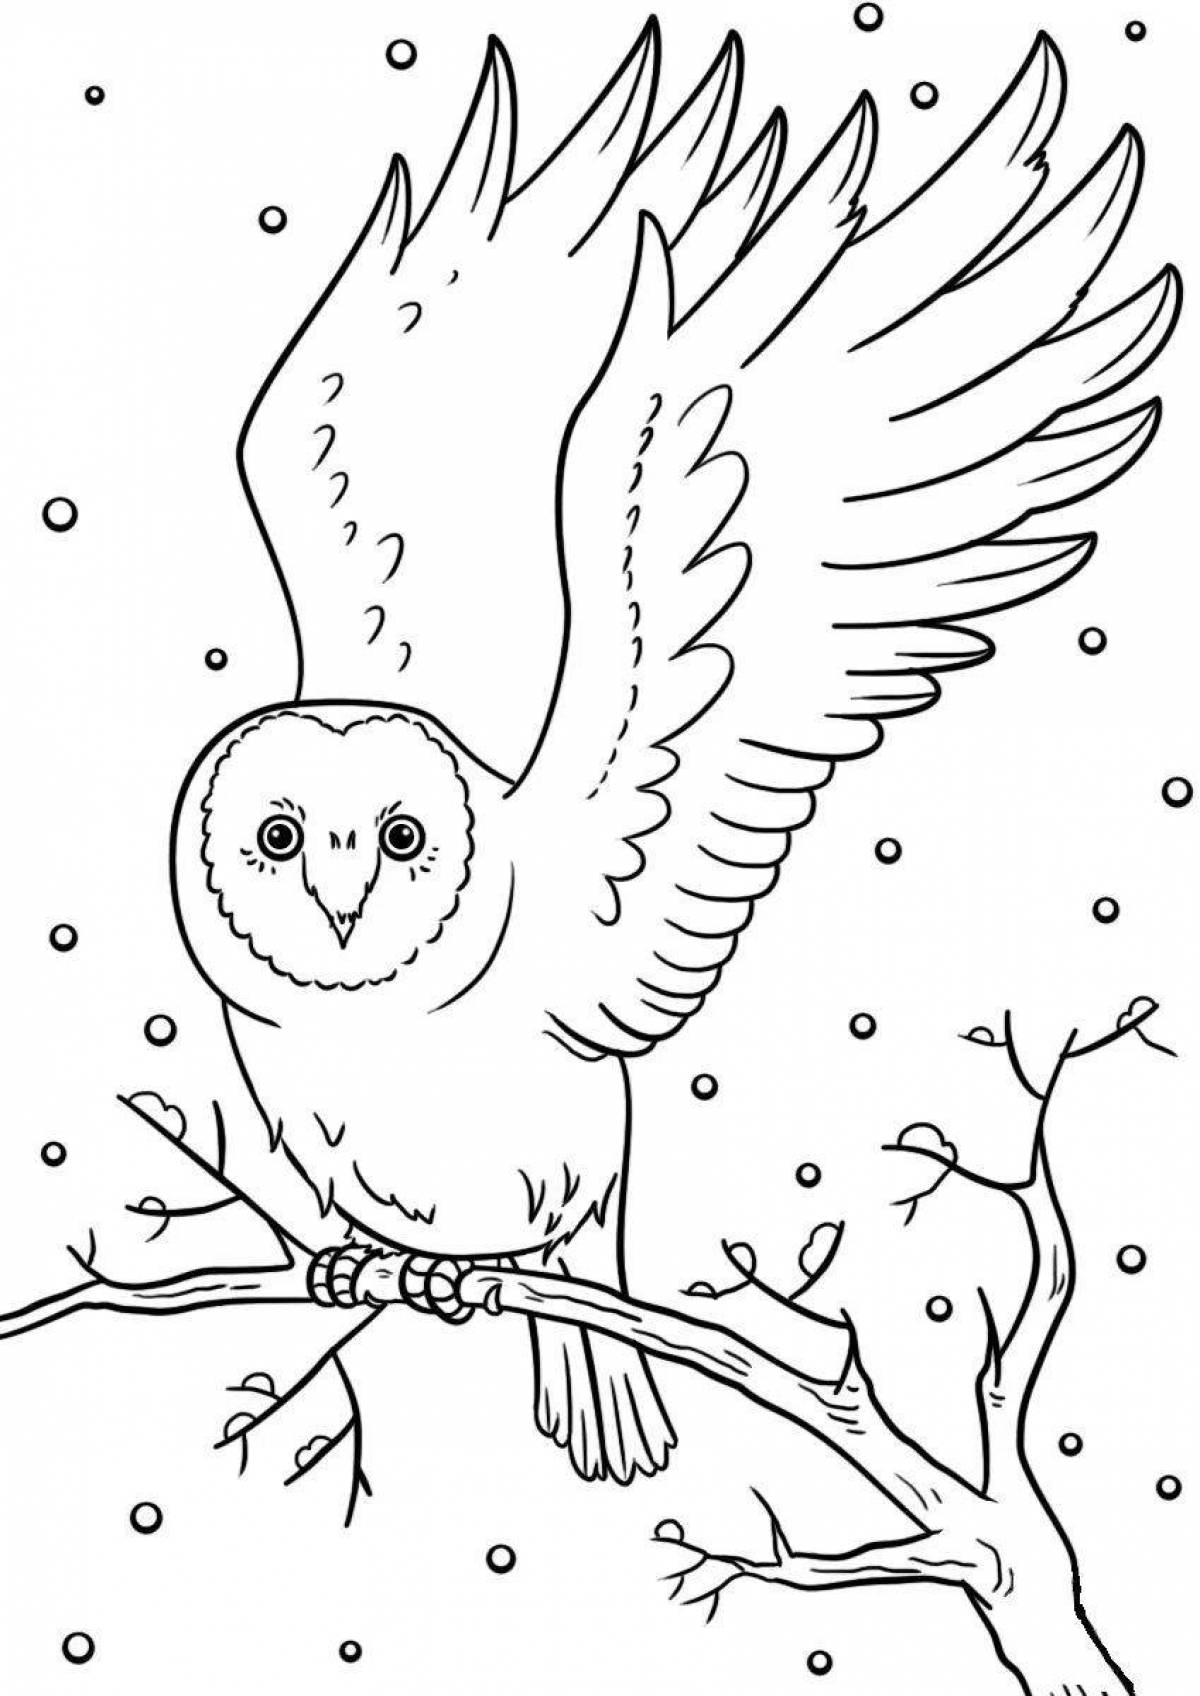 Vivid winter birds coloring page